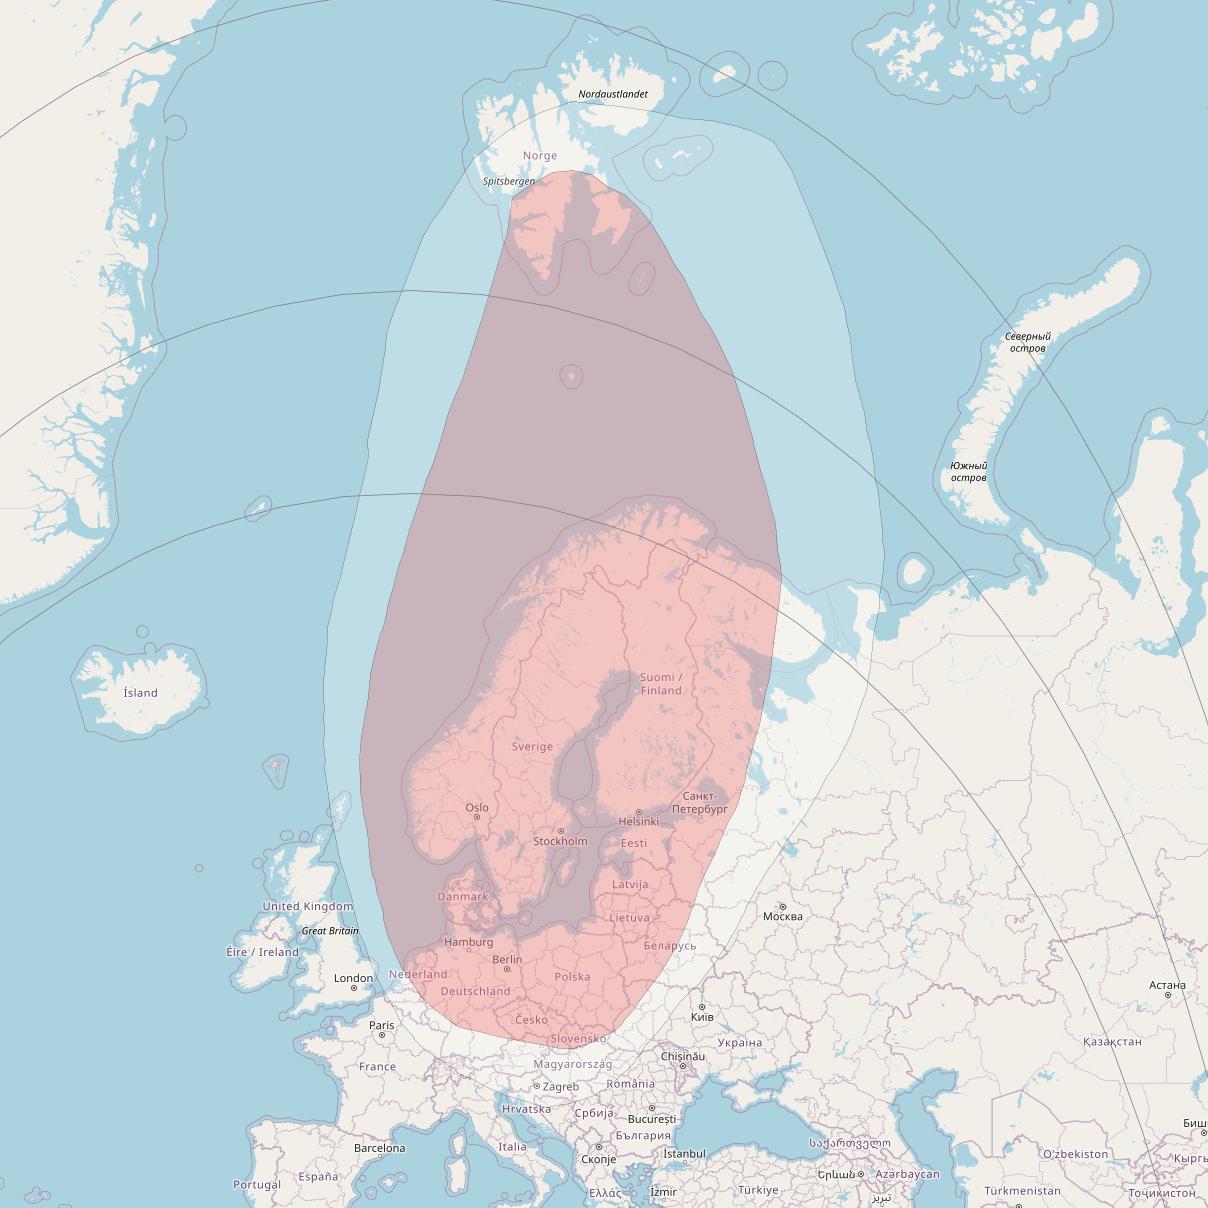 Astra 4A at 5° E downlink Ku-band Nordic FSS Beam coverage map